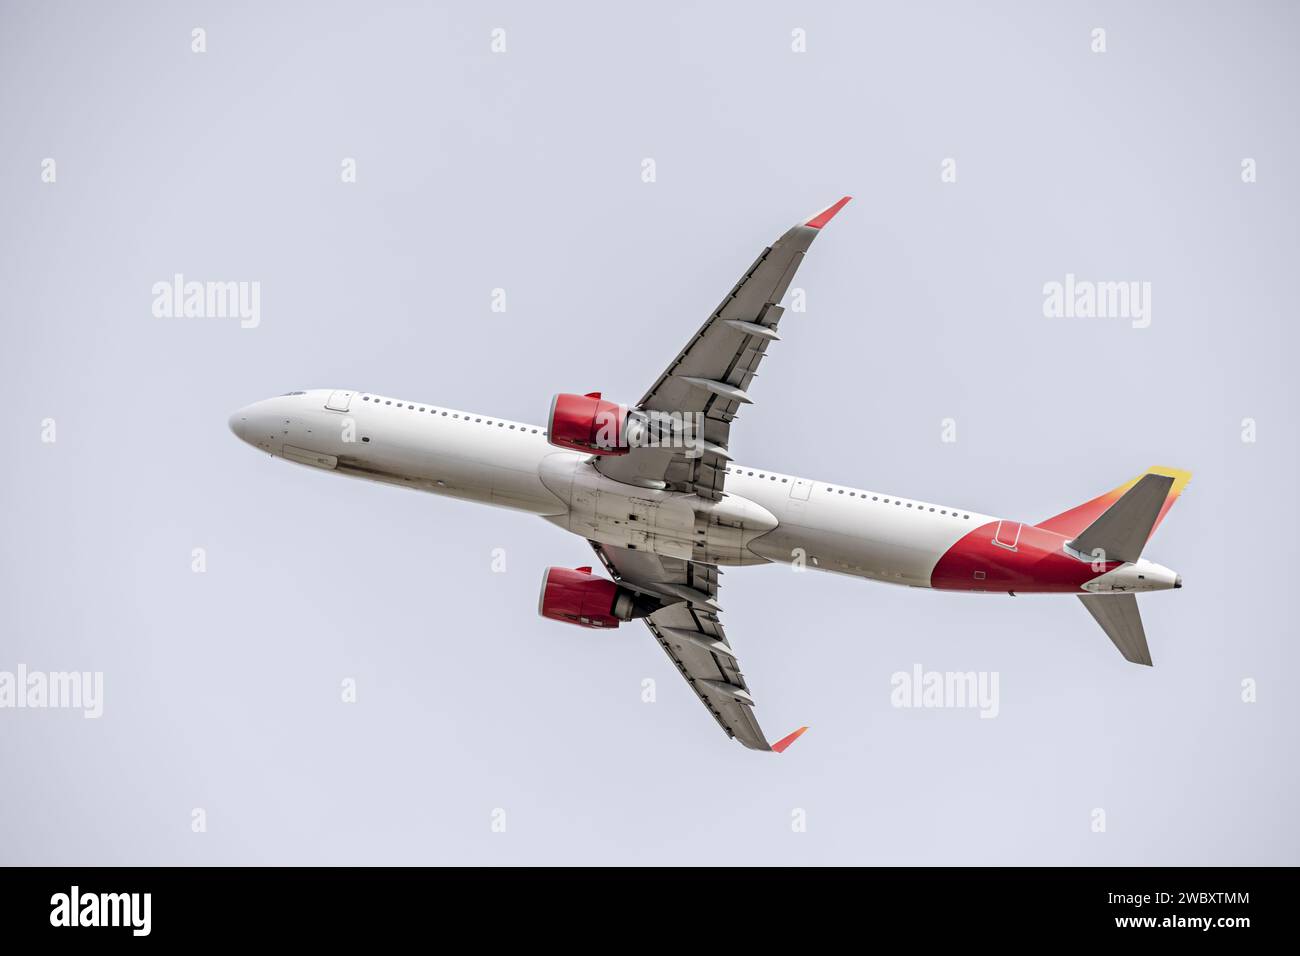 Un avión de pasajeros ascendiendo en un cielo claro Foto de stock